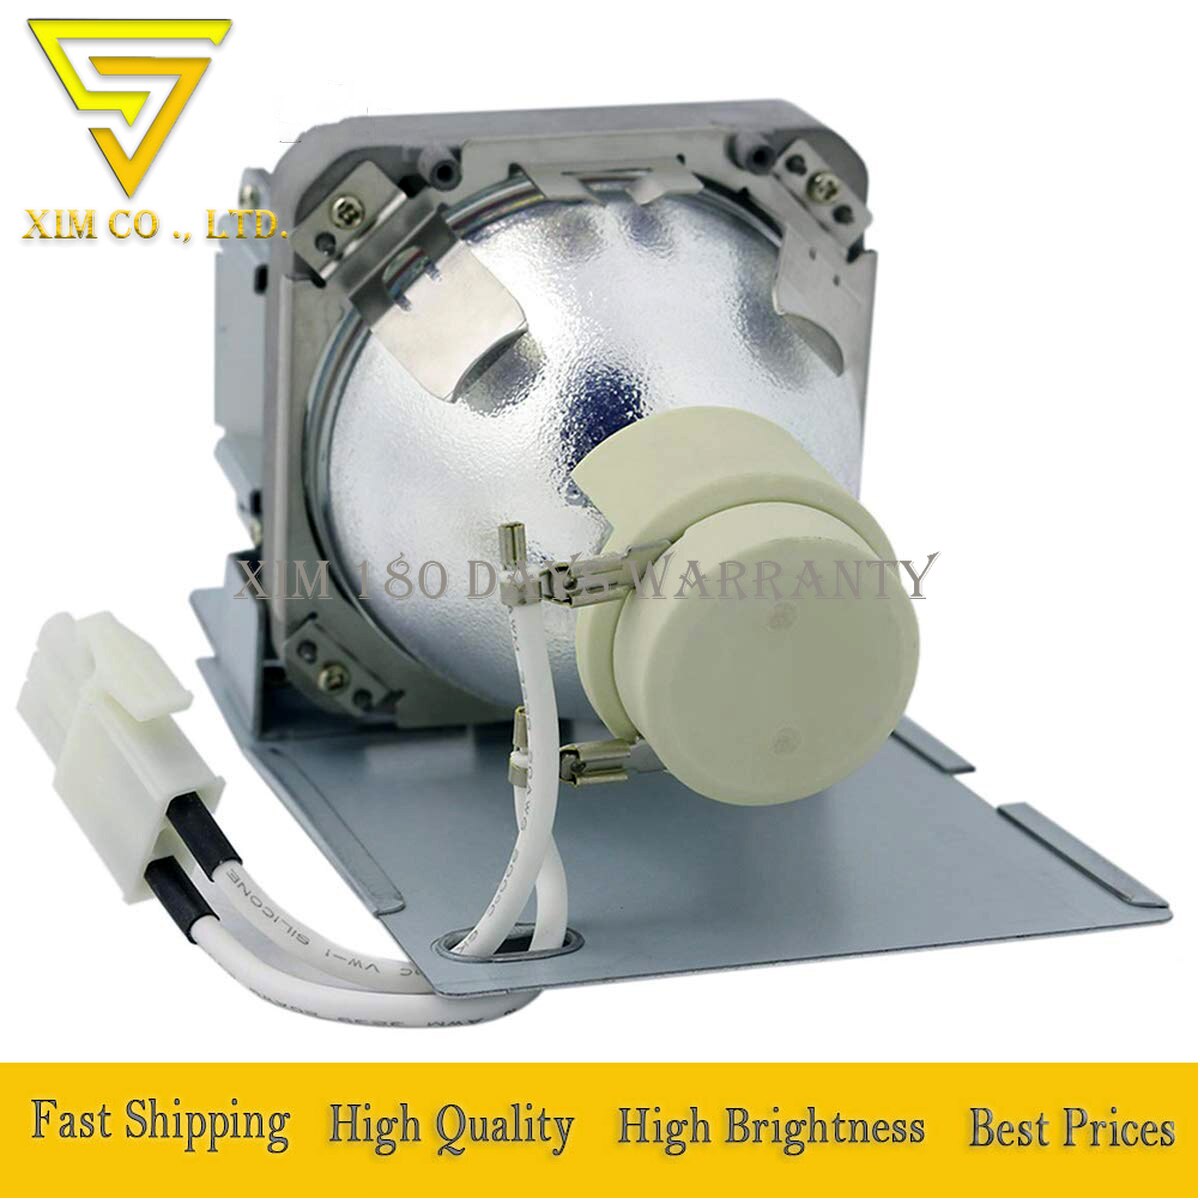 5J. JFG05.001 hochwertigen Projektor Lampe mit Gehäbenutzen passen für BENQ MH750, SH753, SU754, SW752, SX751 projektoren